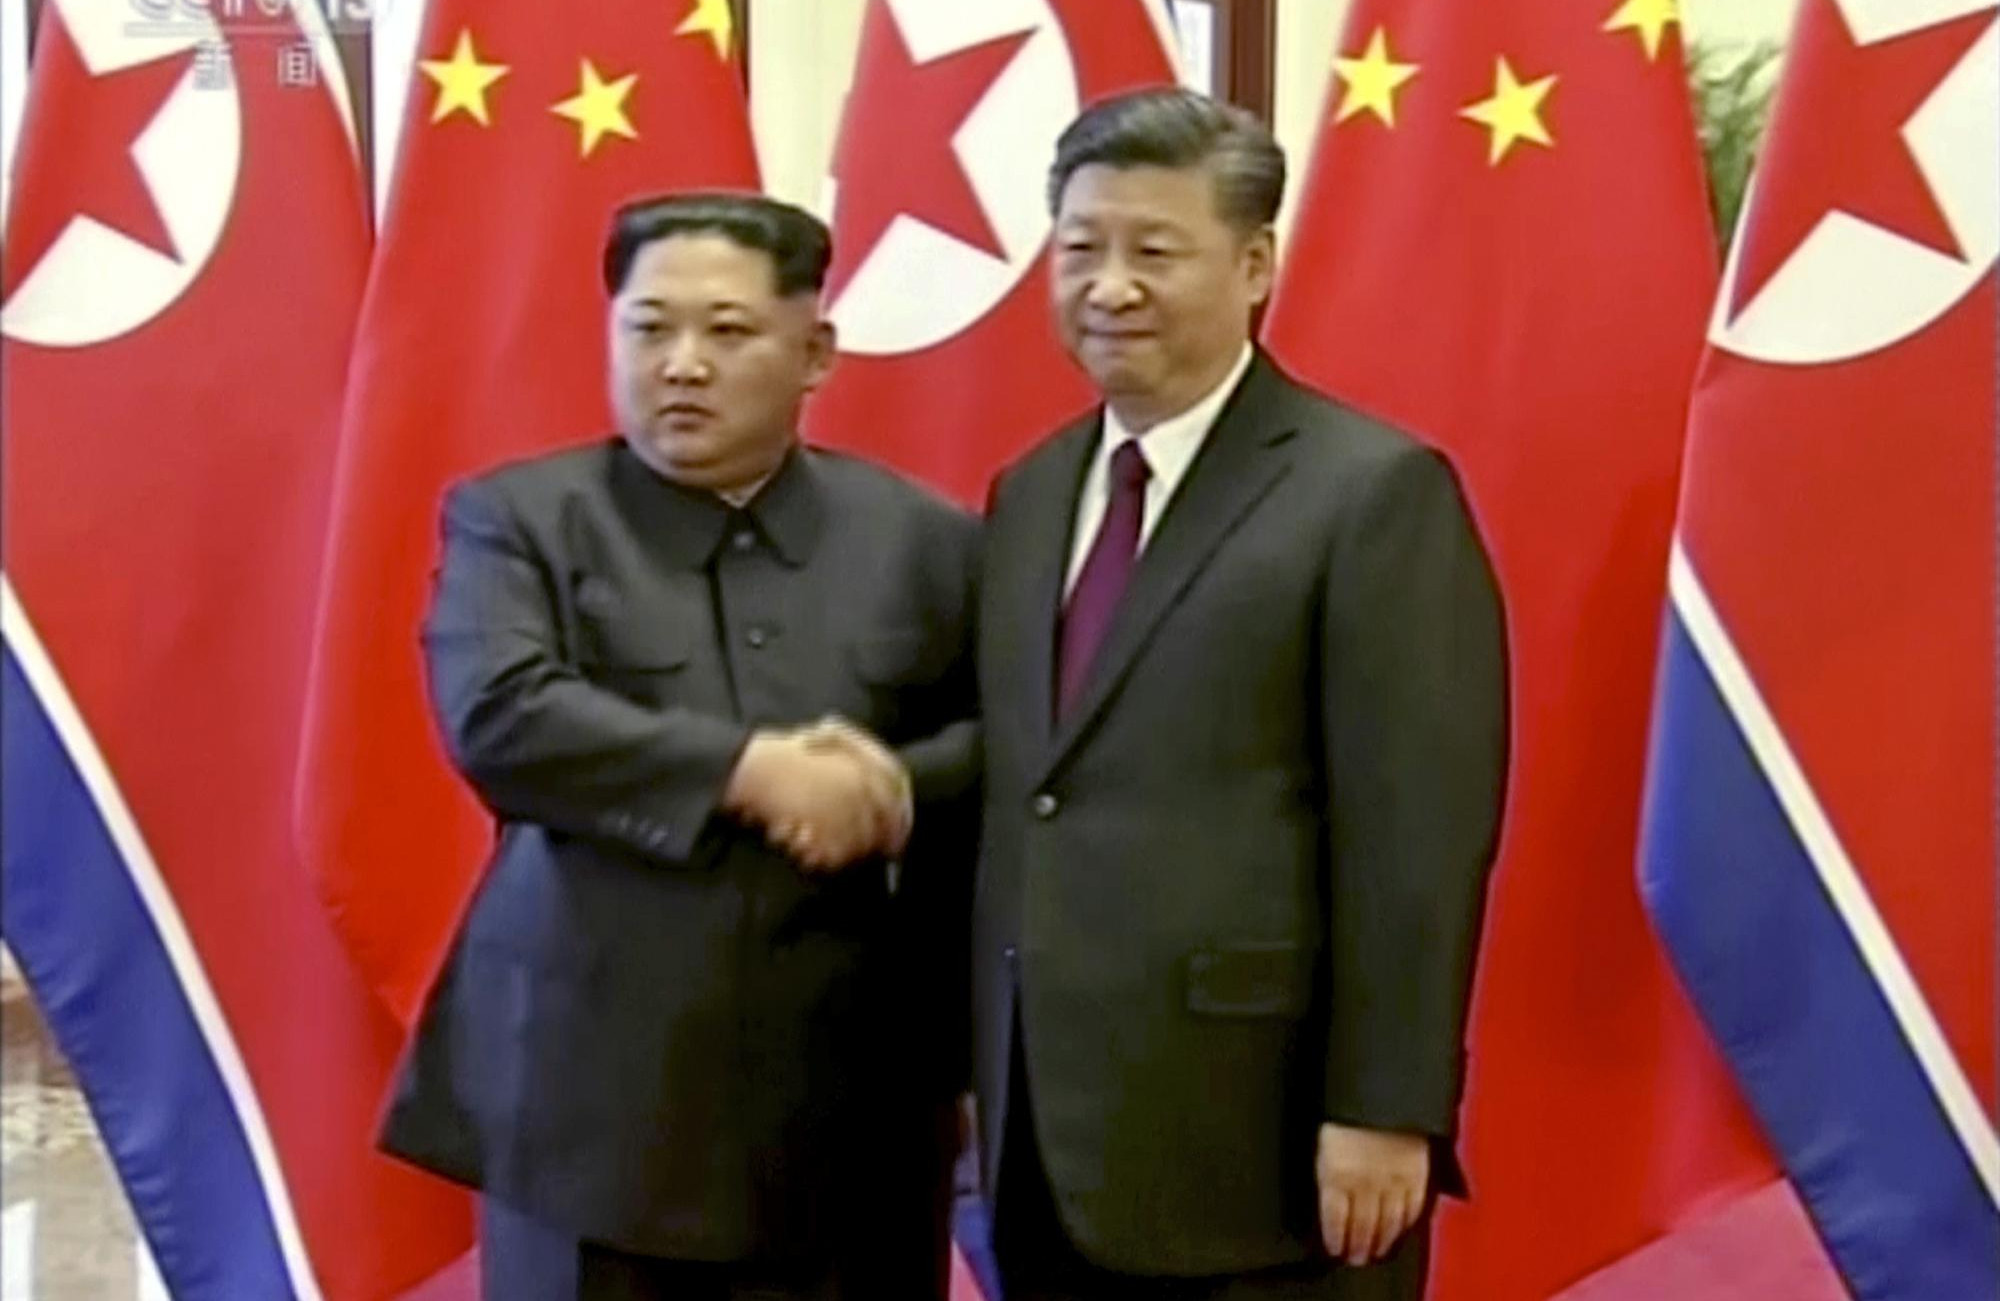 SI ĐINPING: Susret Kima i Trampa korak ka političkom rešavanju nuklearnog pitanja Korejskog poluostrva